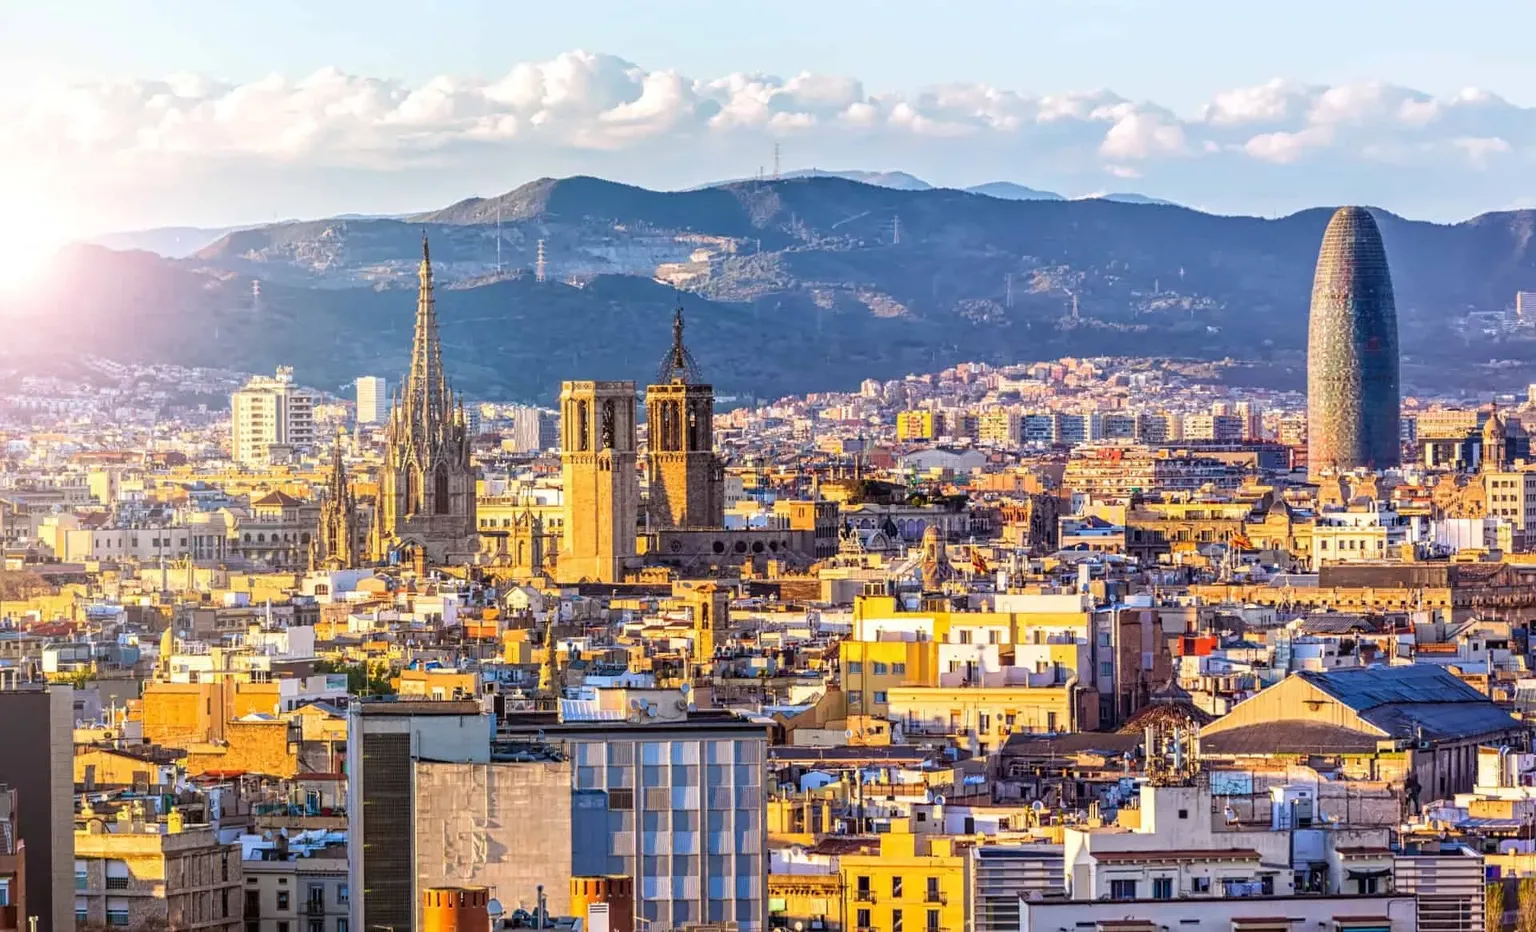 Barcelona | Catalonia Region, Spain - Rated 8.6